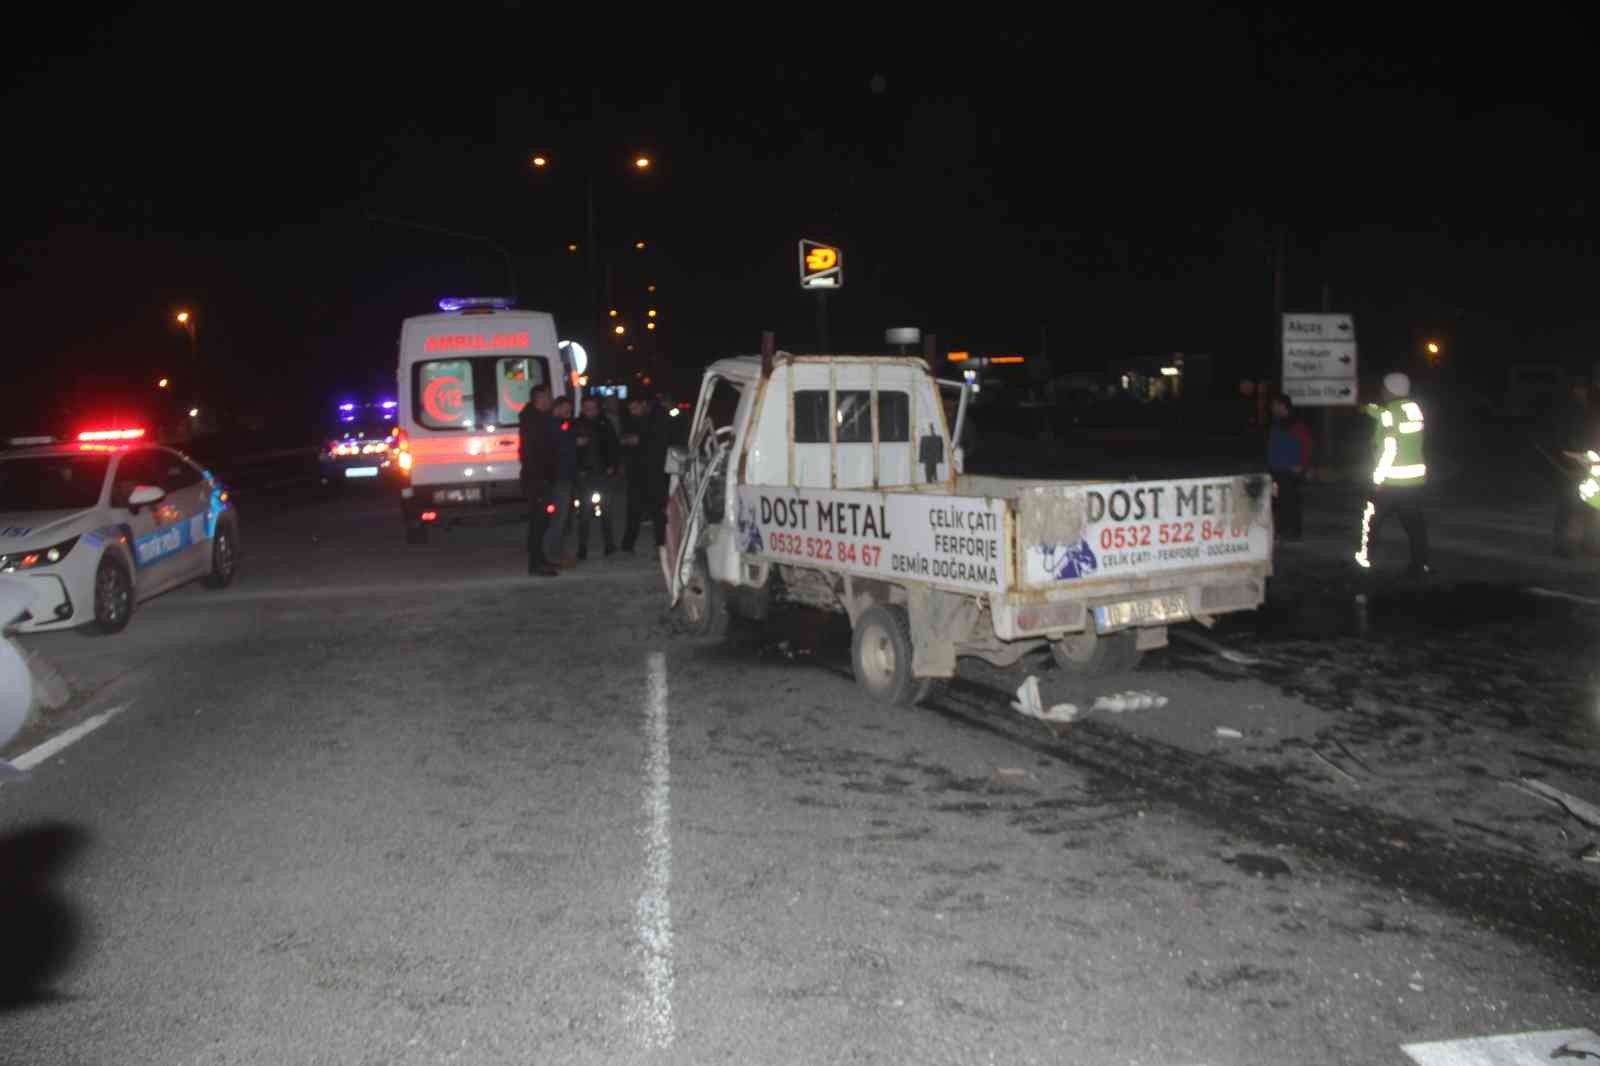 Balıkesir’de can pazarı...Kamyonet kırmızı ışıkta bekleyen araçlara çarptı: 1 ölü, 6 yaralı #balikesir